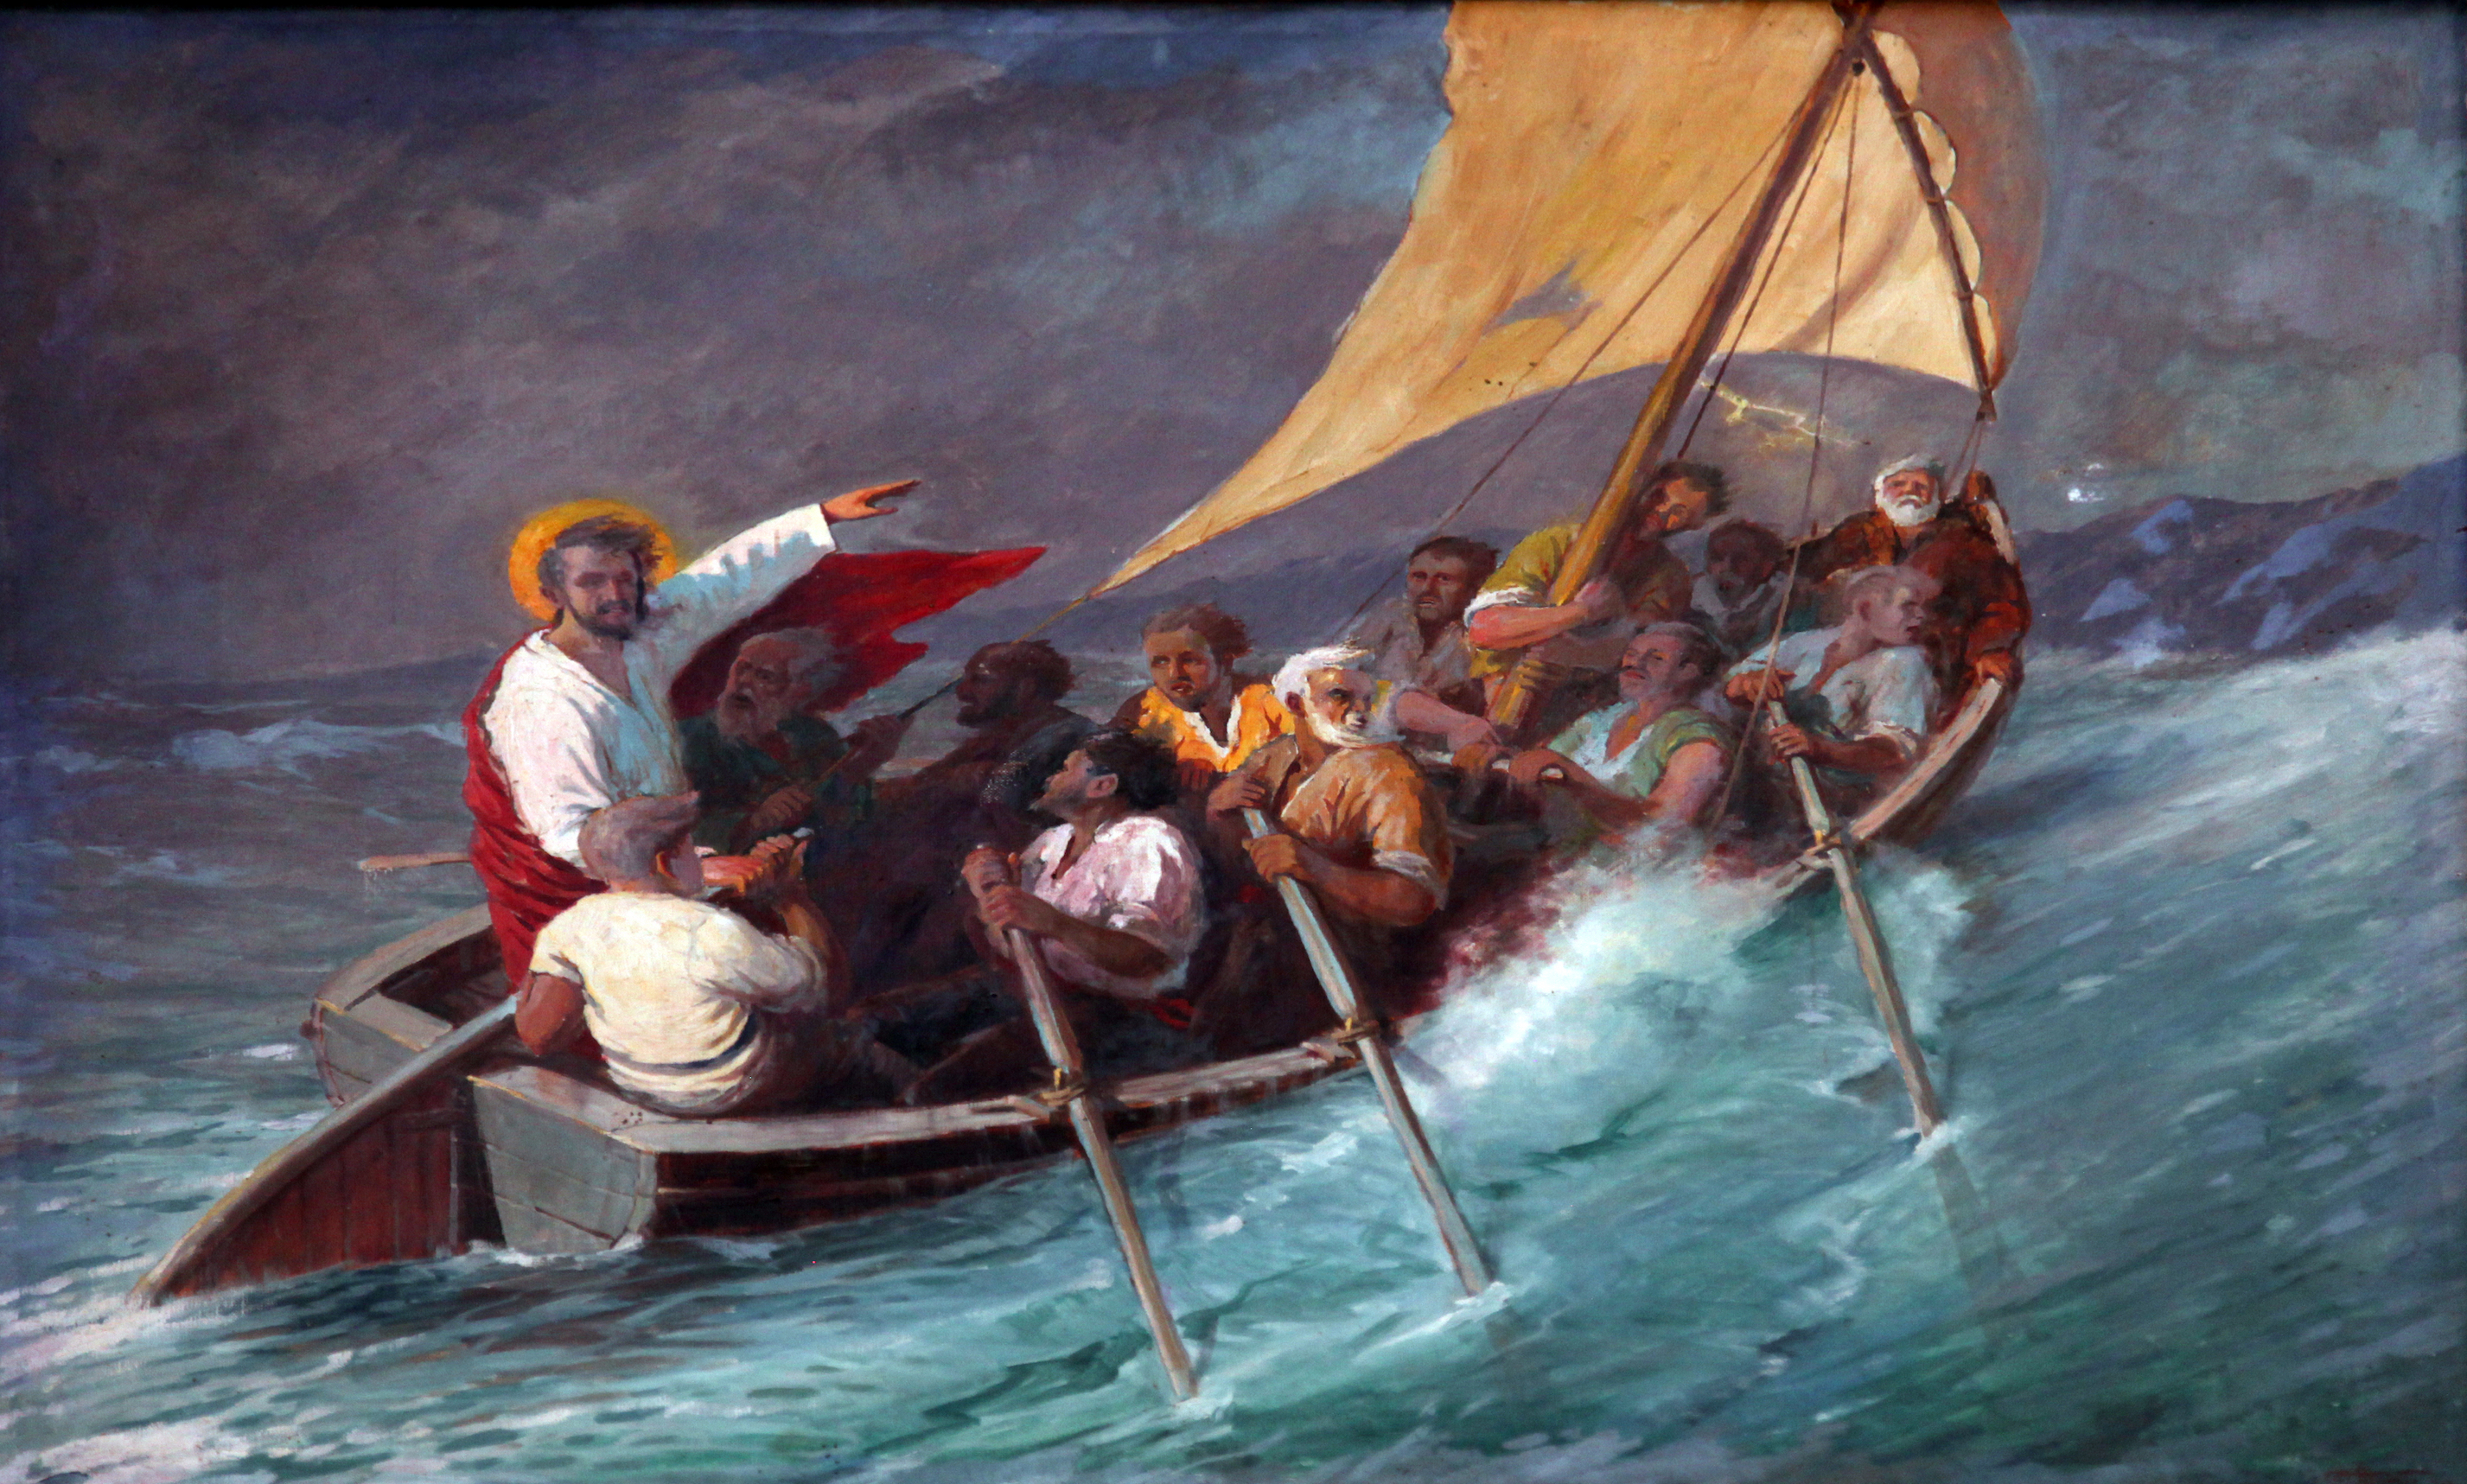 Делакруа ладья. Укрощение бури на море Галилейском. “Христос в Галилейском море” э.Делакруа 1854. Усмирение бури на Галилейском море. Христос на Галилейском море Рембрандт.